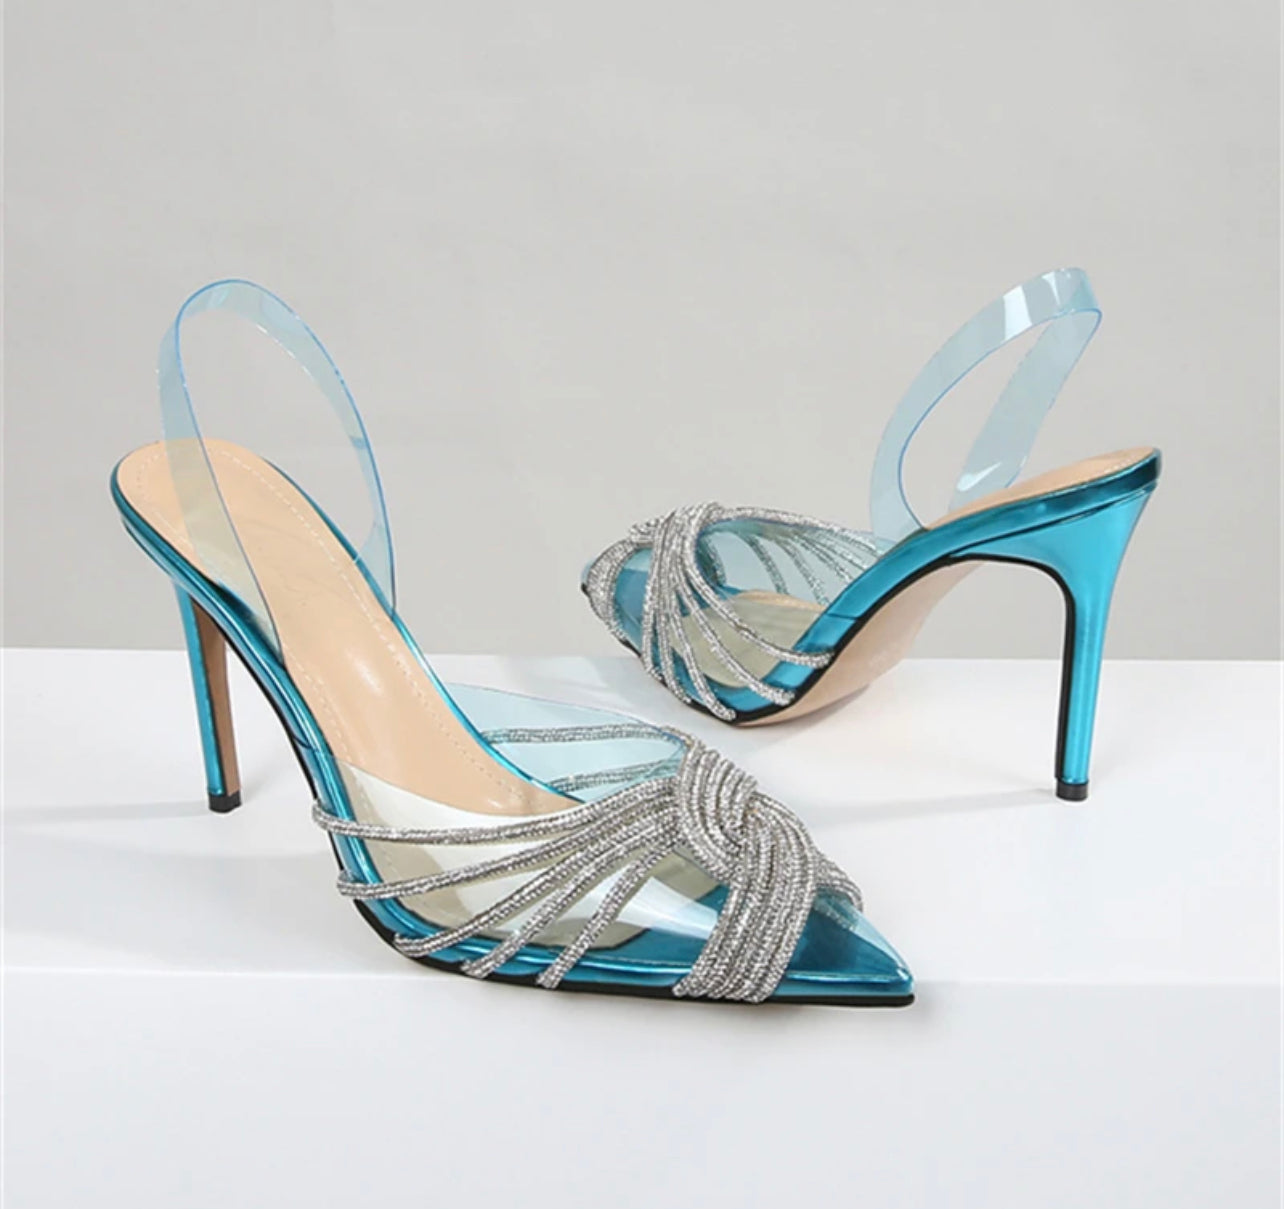 Women's high-end heels